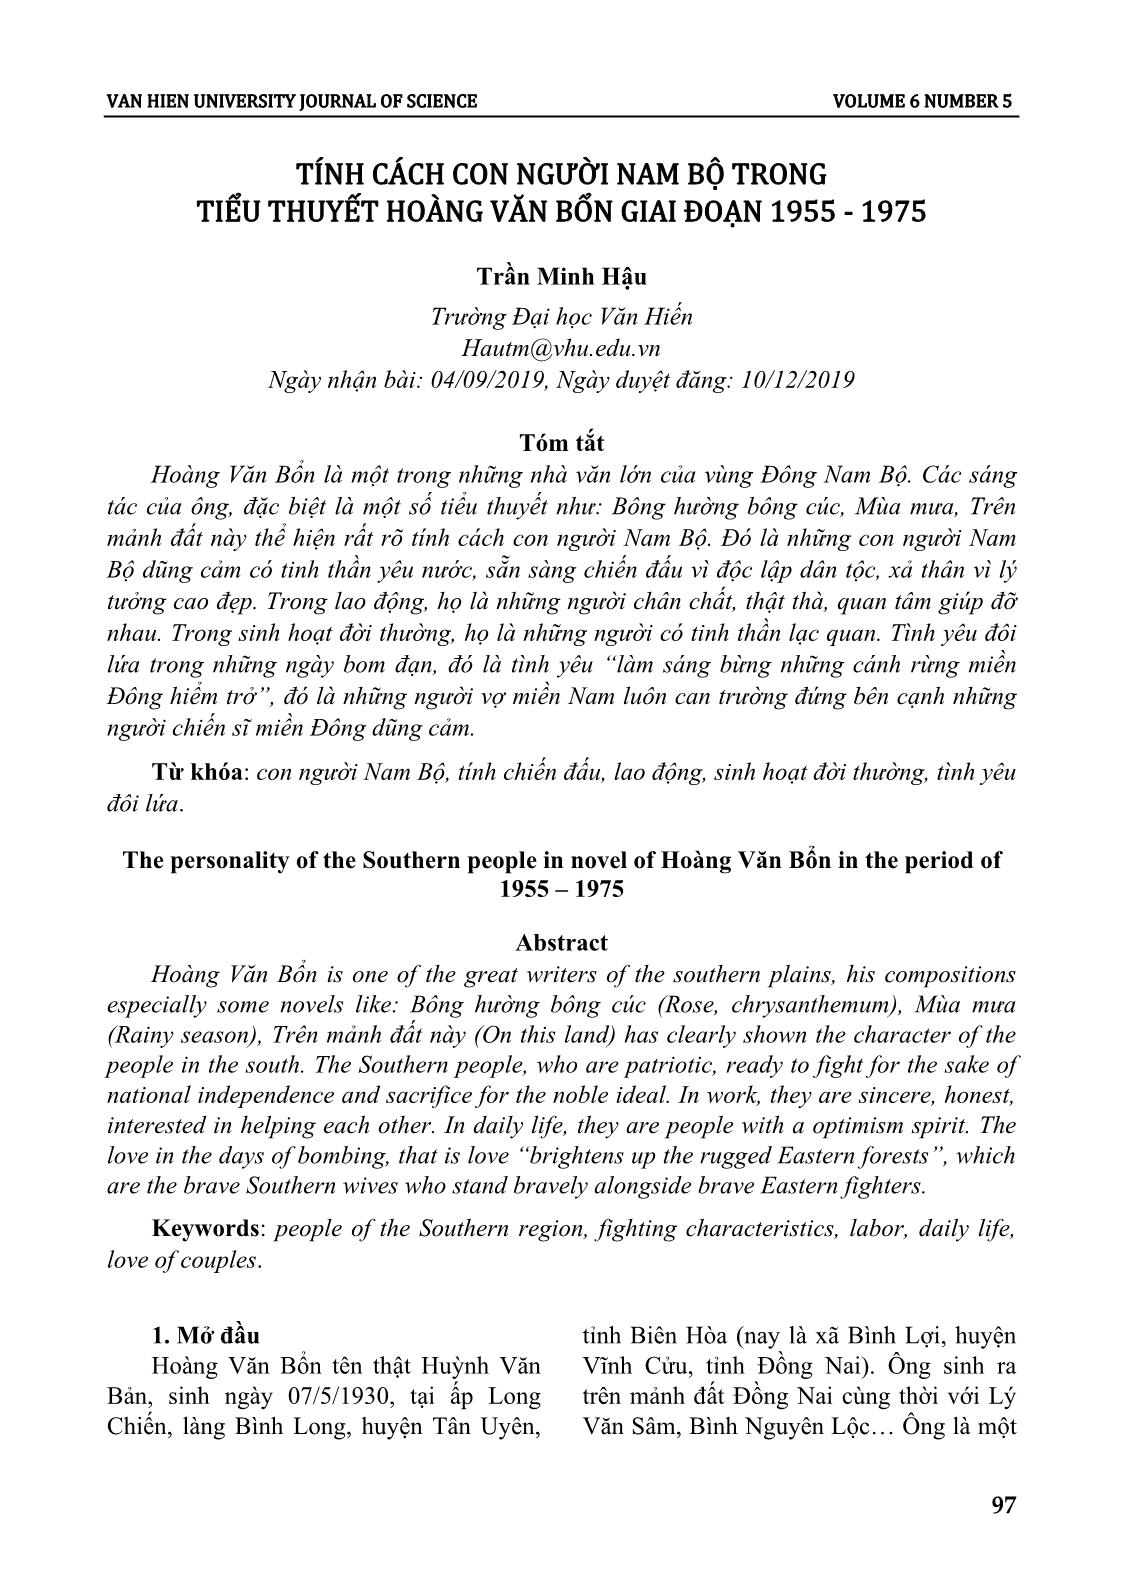 Tính cách con người nam bộ trong tiểu thuyết Hoàng Văn Bổn giai đoạn 1955 - 1975 trang 1